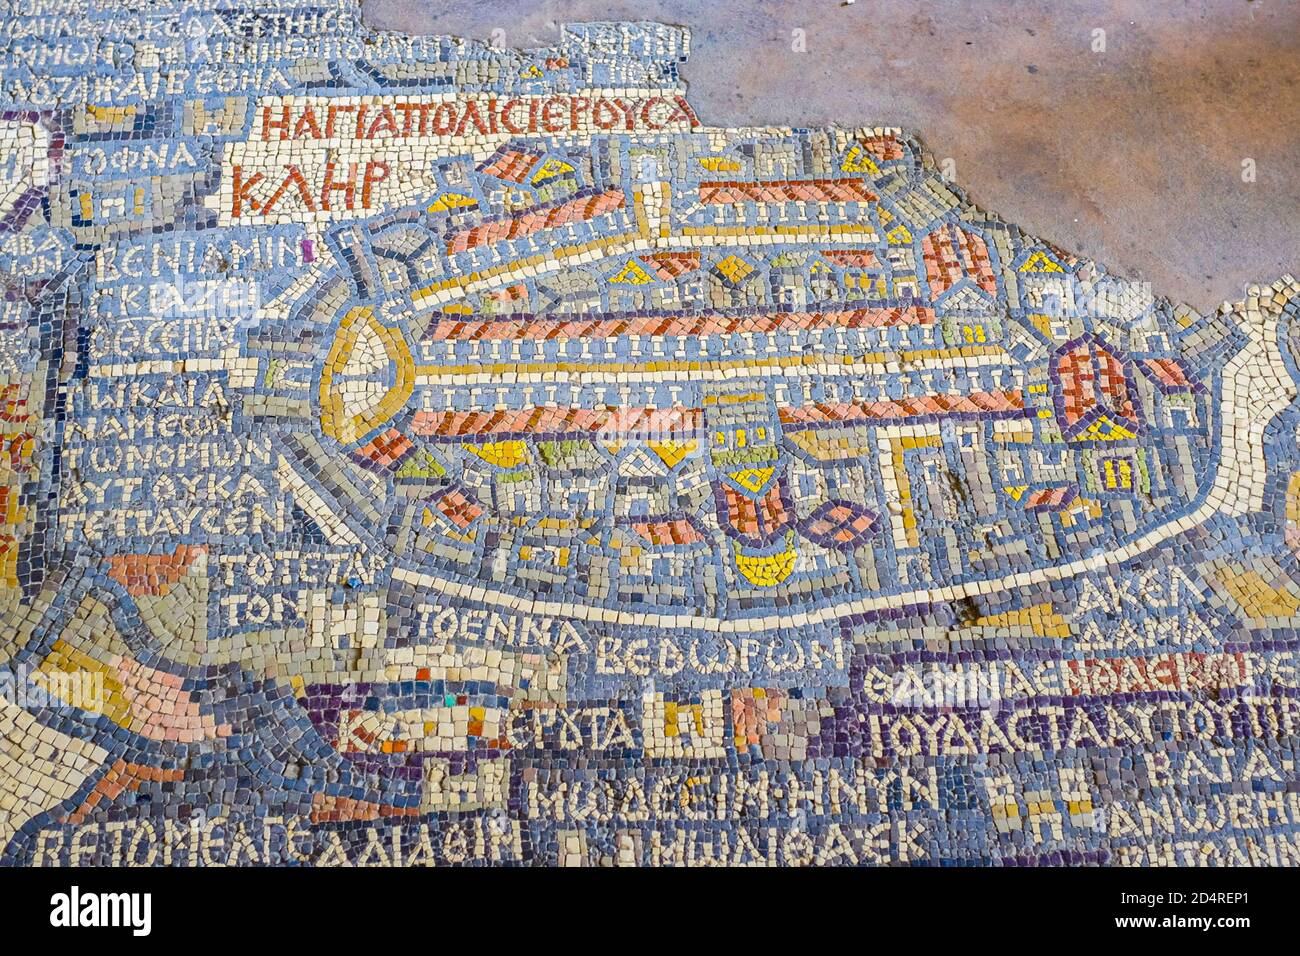 Détail de la carte de la mosaïque de Madaba montrant Jérusalem.la mosaïque est la plus ancienne carte de la Terre Sainte. Église Saint-George, Madaba, Jordanie Banque D'Images